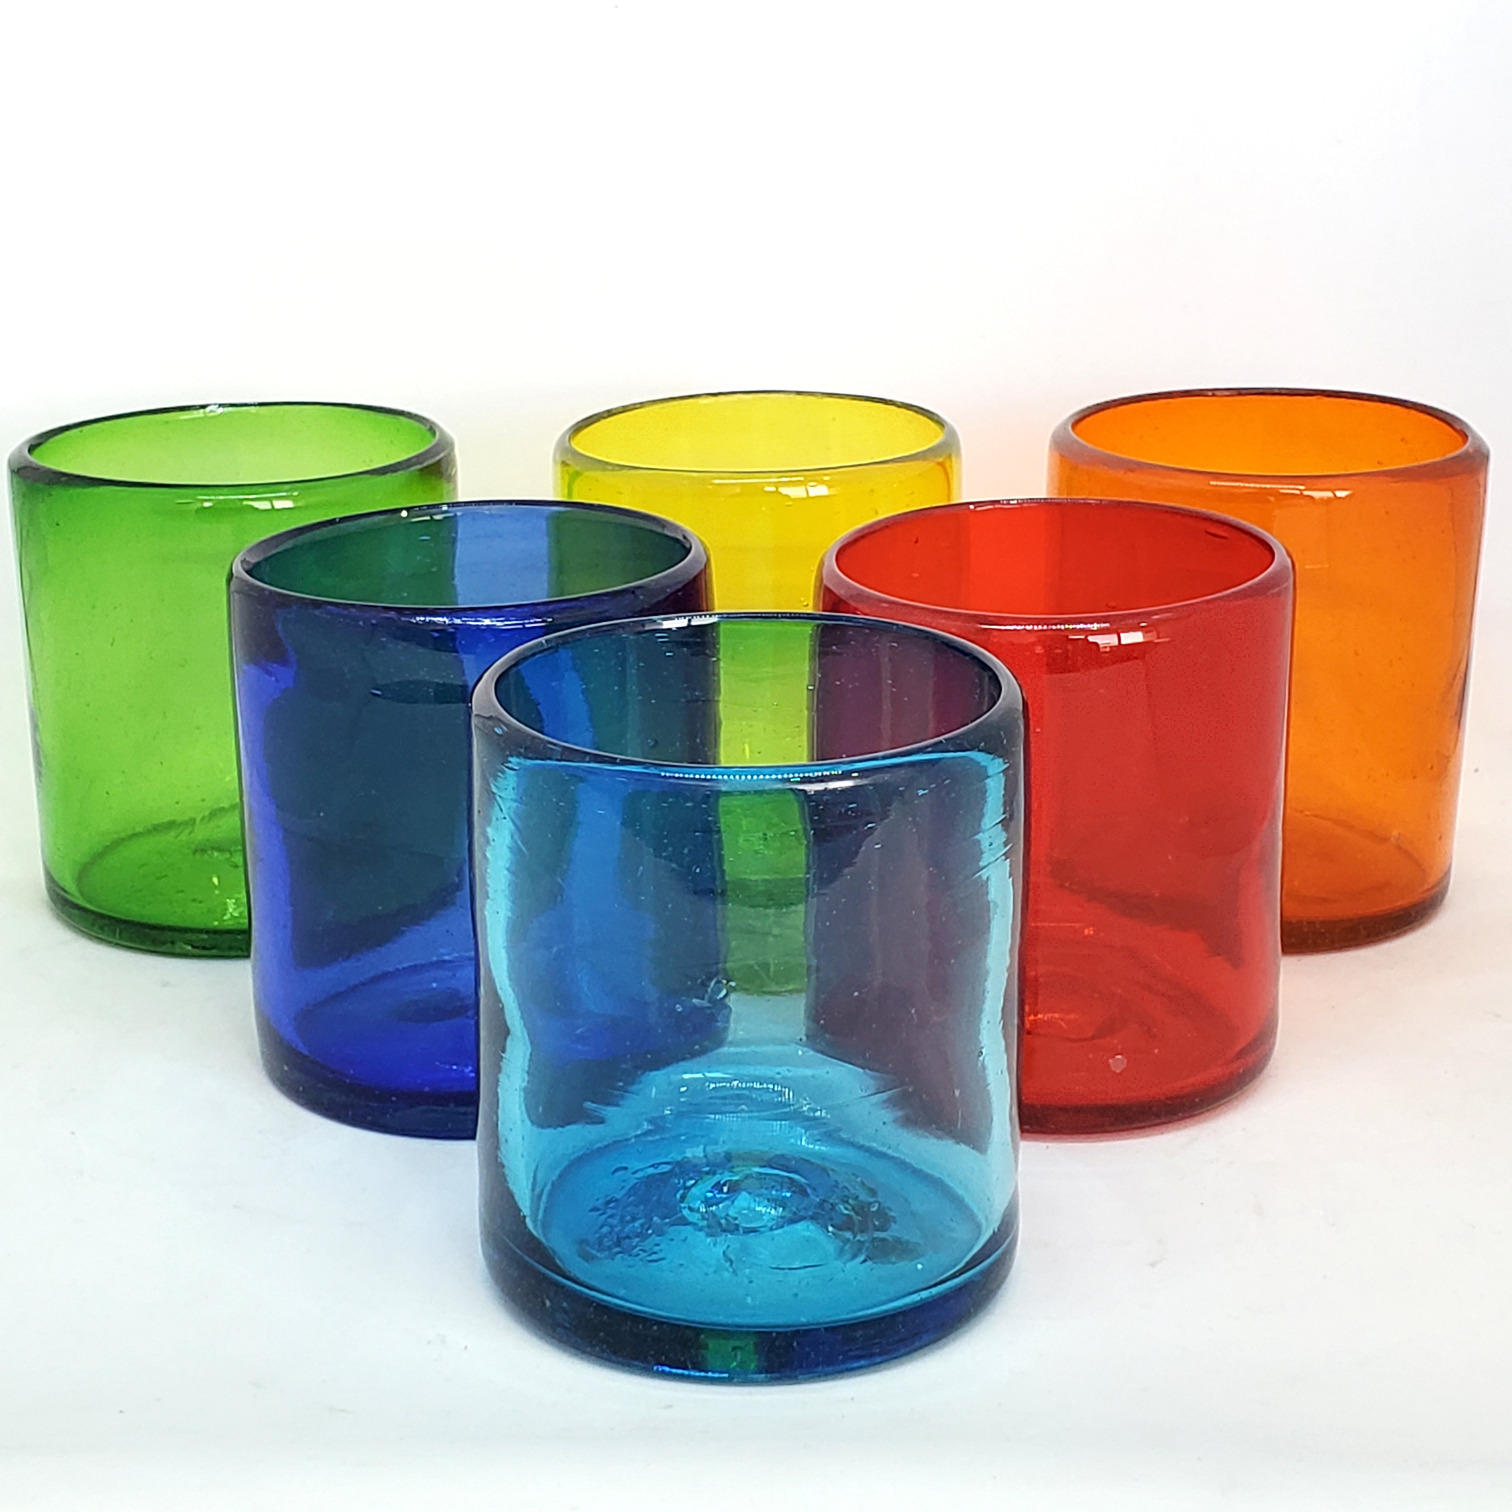 Novedades / Vasos chicos 9 oz Arcoiris (set de 6) / �stos artesanales vasos le dar�n un toque colorido a su bebida favorita.